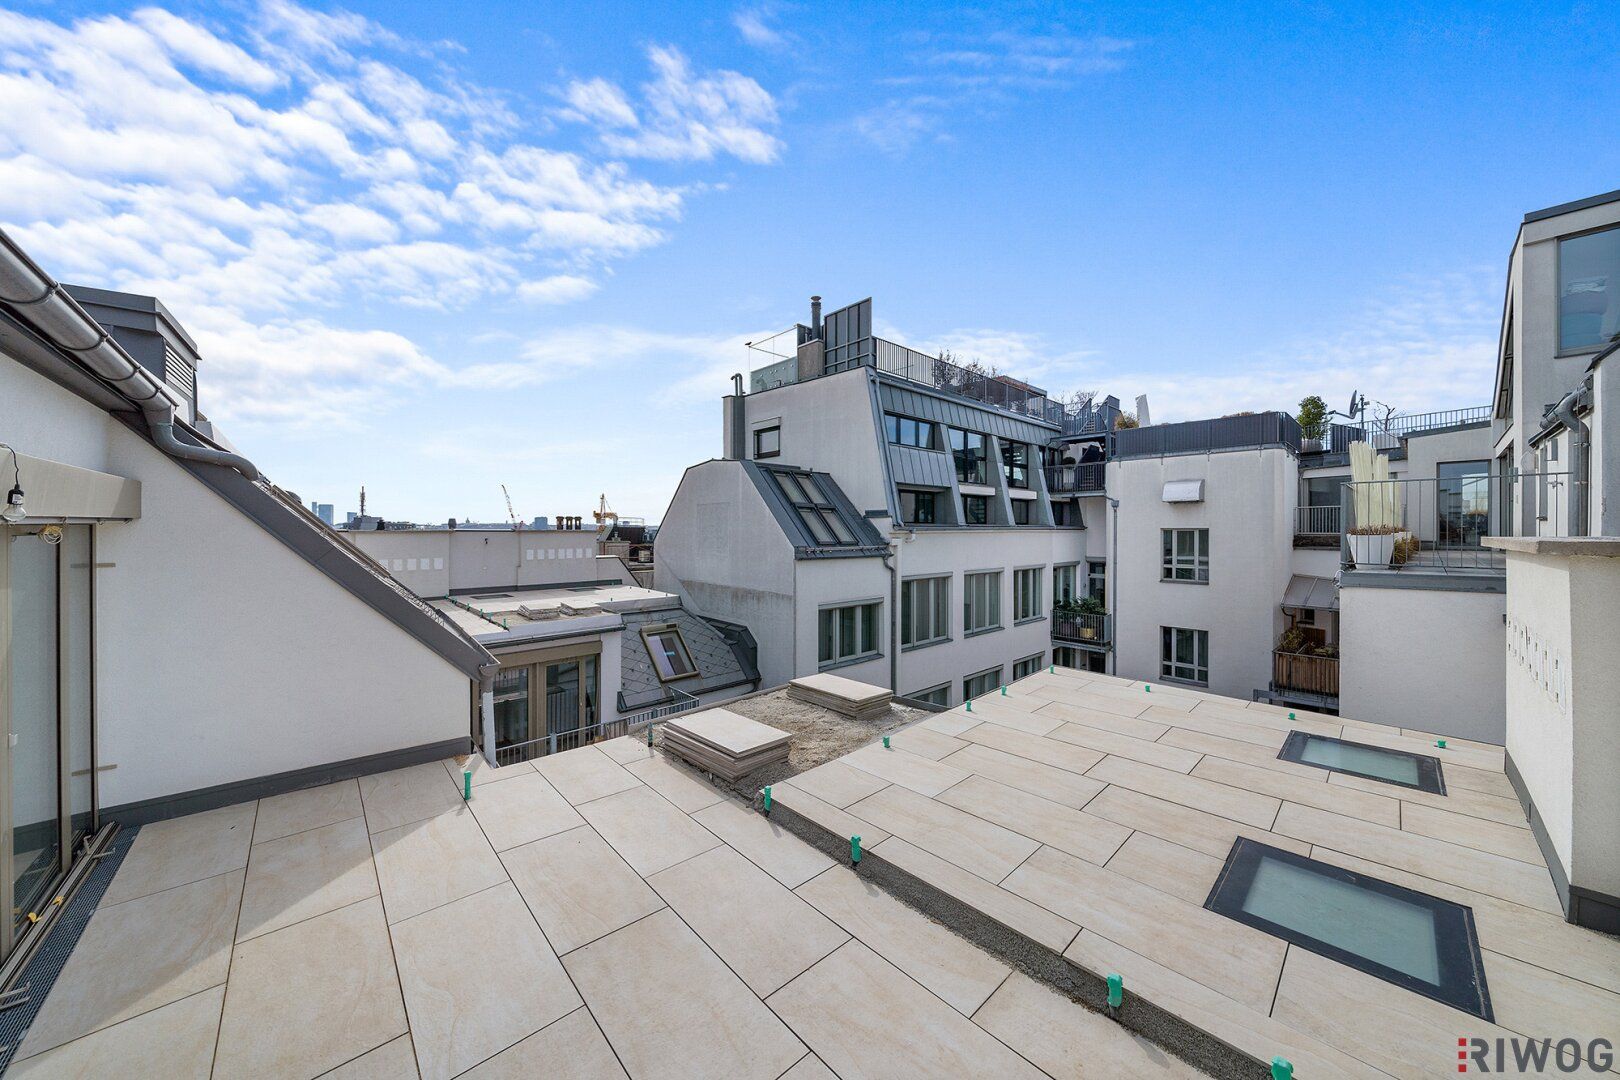 Erstbezug Innenhof Dachterrassenwohnung | Ca. 30m² Freiflächen | 2 Minuten zur Mariahilferstr. | 2 Minuten zur U6